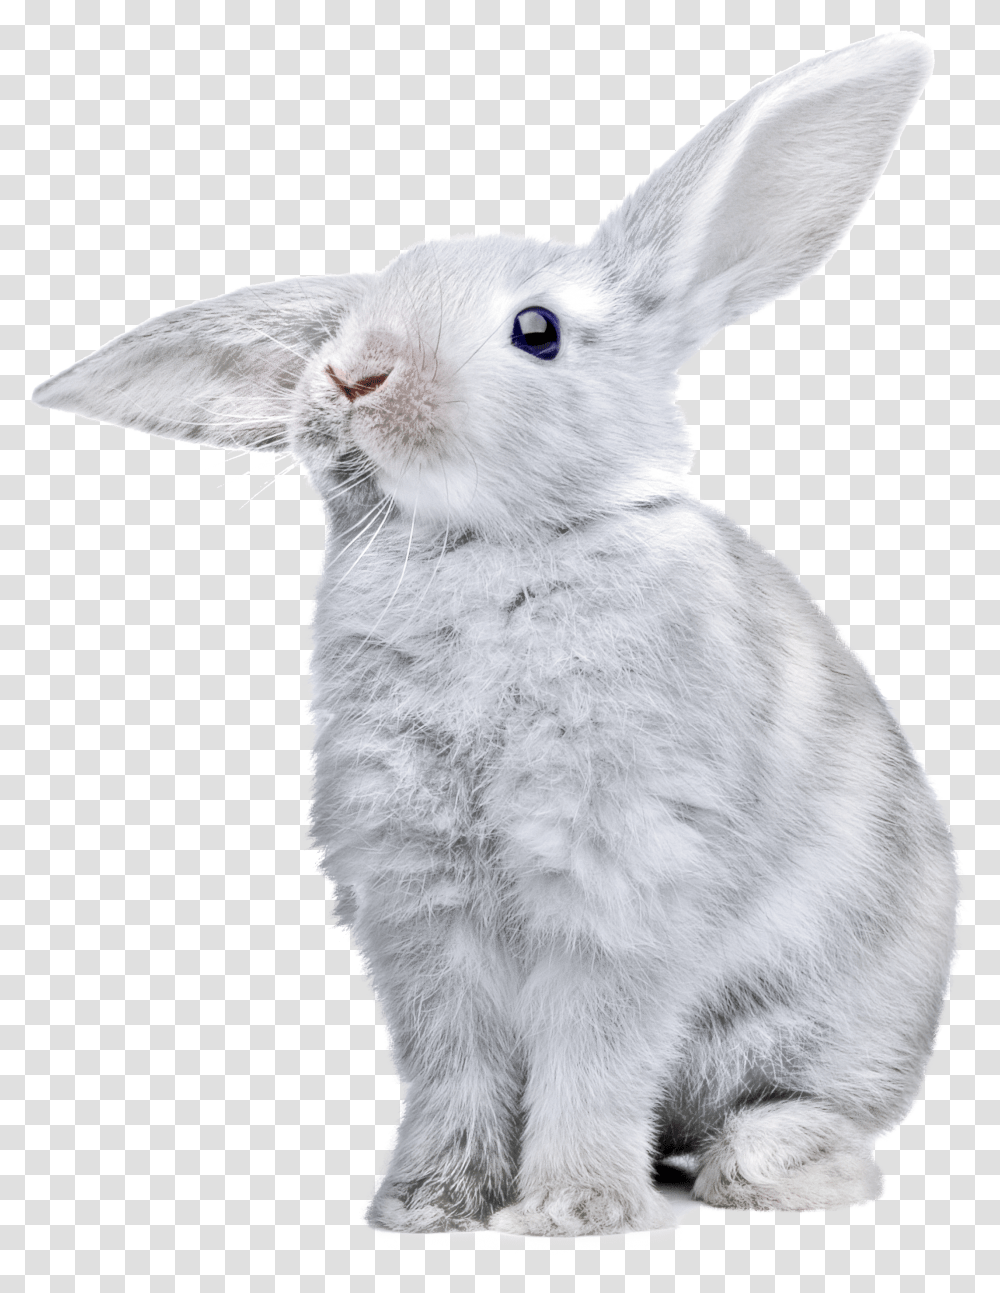 Rabbit Images Free Rabbit Pictures Rabbit Transparent Png